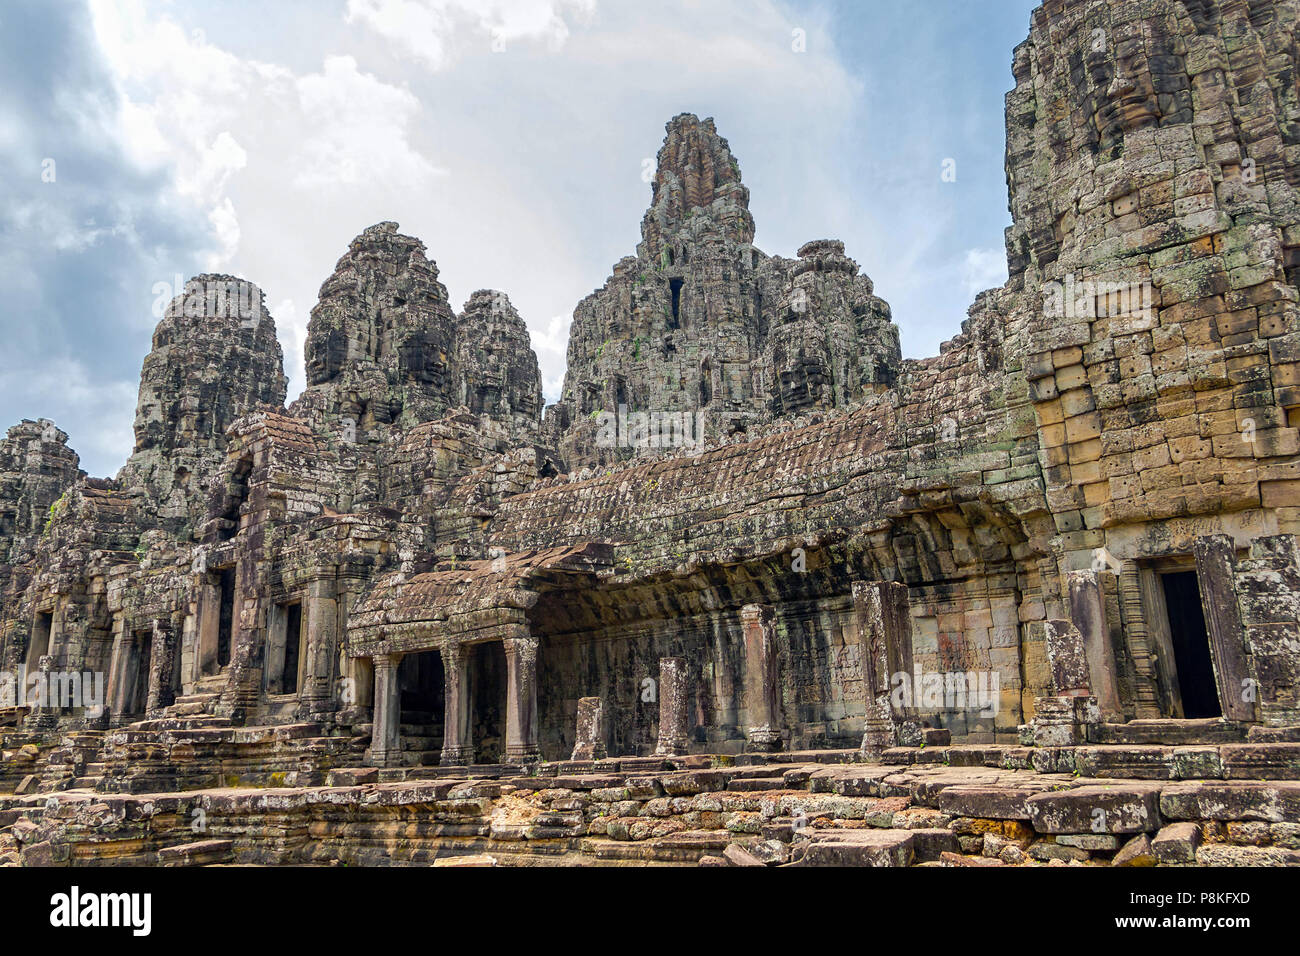 Die berühmten Roten Khmer Tempel von Angkor Tom in Kambodscha  Stockfotografie - Alamy